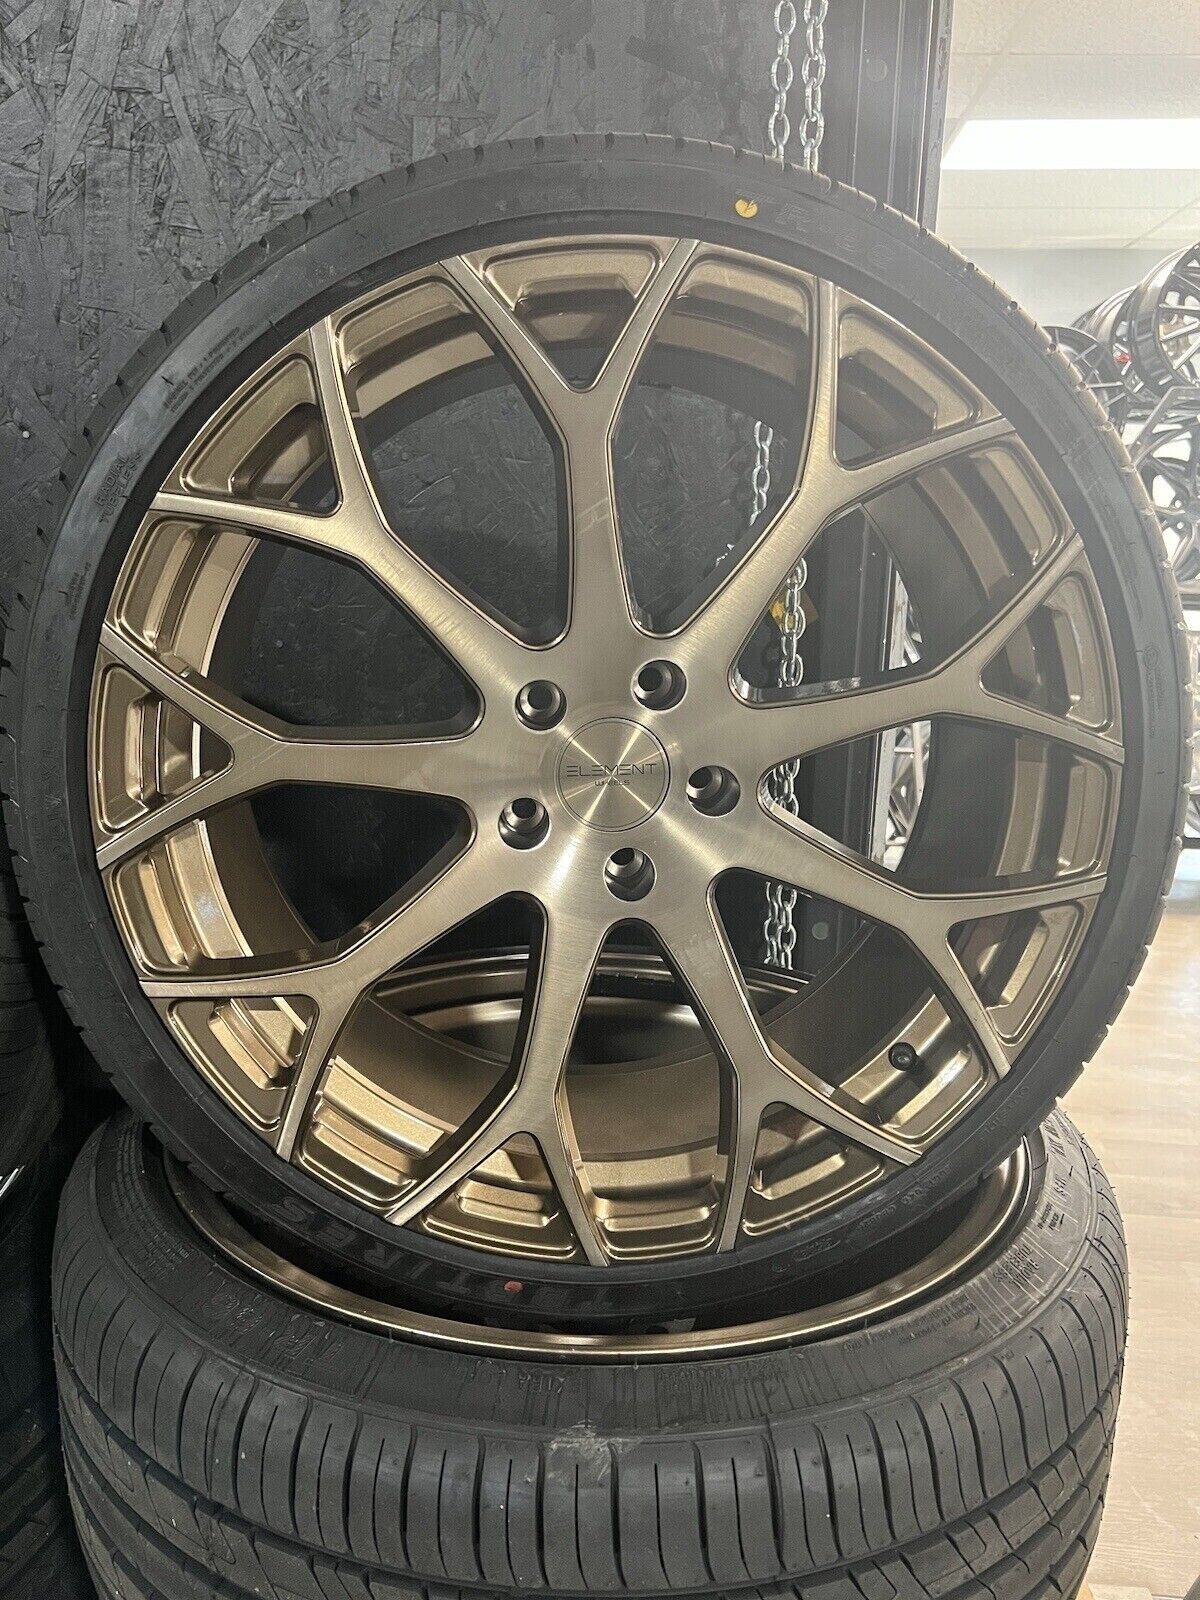 4 New 20” Element EL99 Bronze 5x114.3 Wheels Rims W/ 2453520 Performance Tires